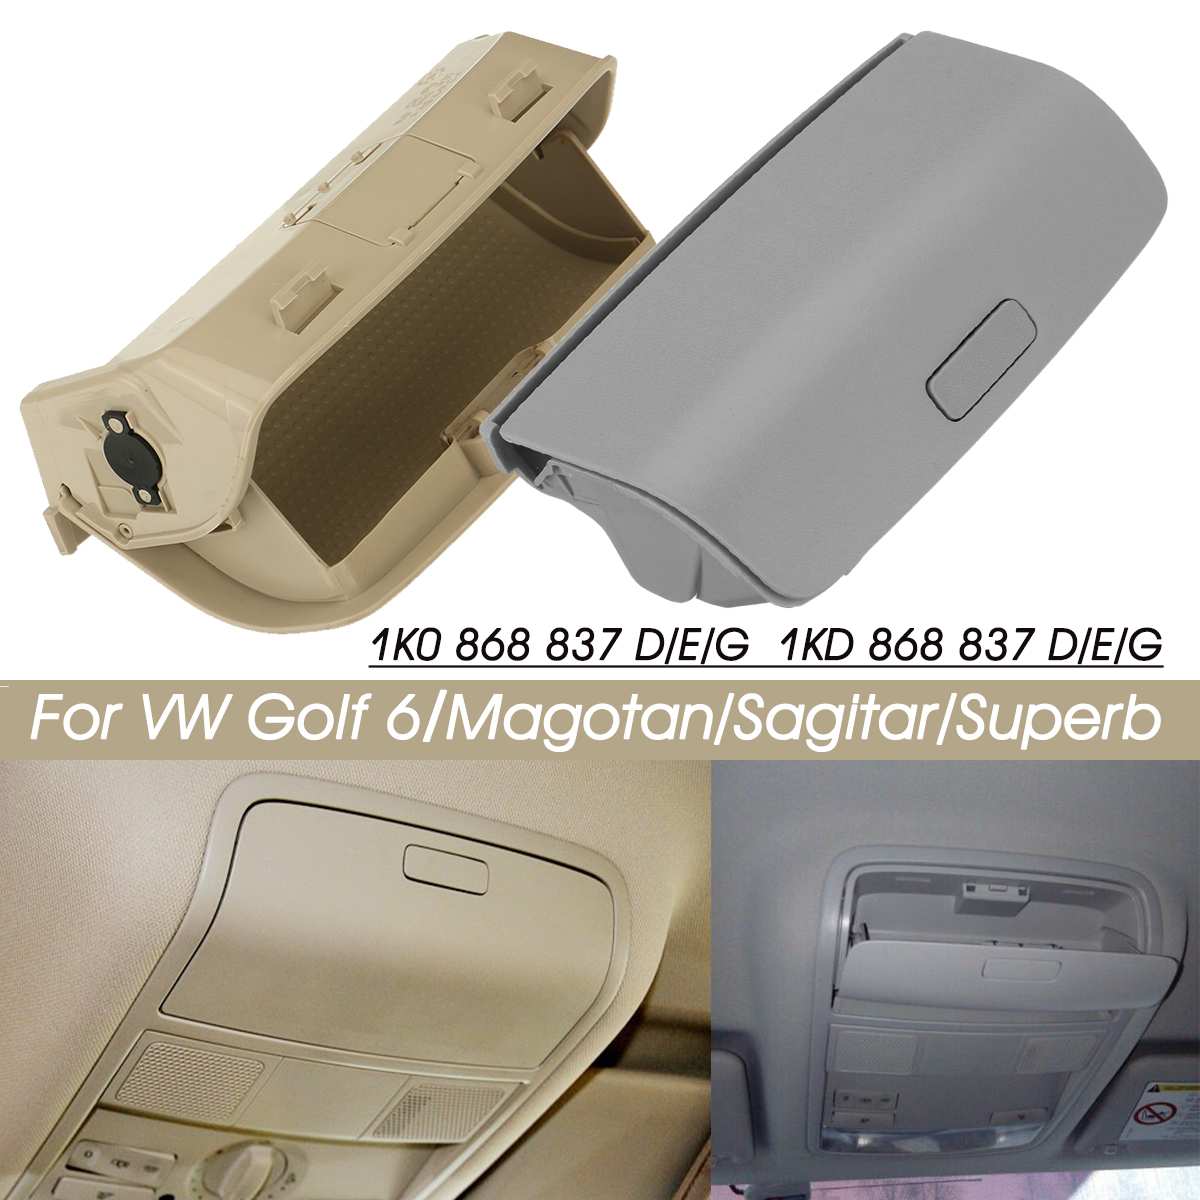 Auto Zonnebril Bril Houder Box Case Voor Vw Golf MK5 MK6 Tiguan Voor Jetta MK5 Passat/B6 Cc Sharan skoda Yeti/Superb Voor Seat